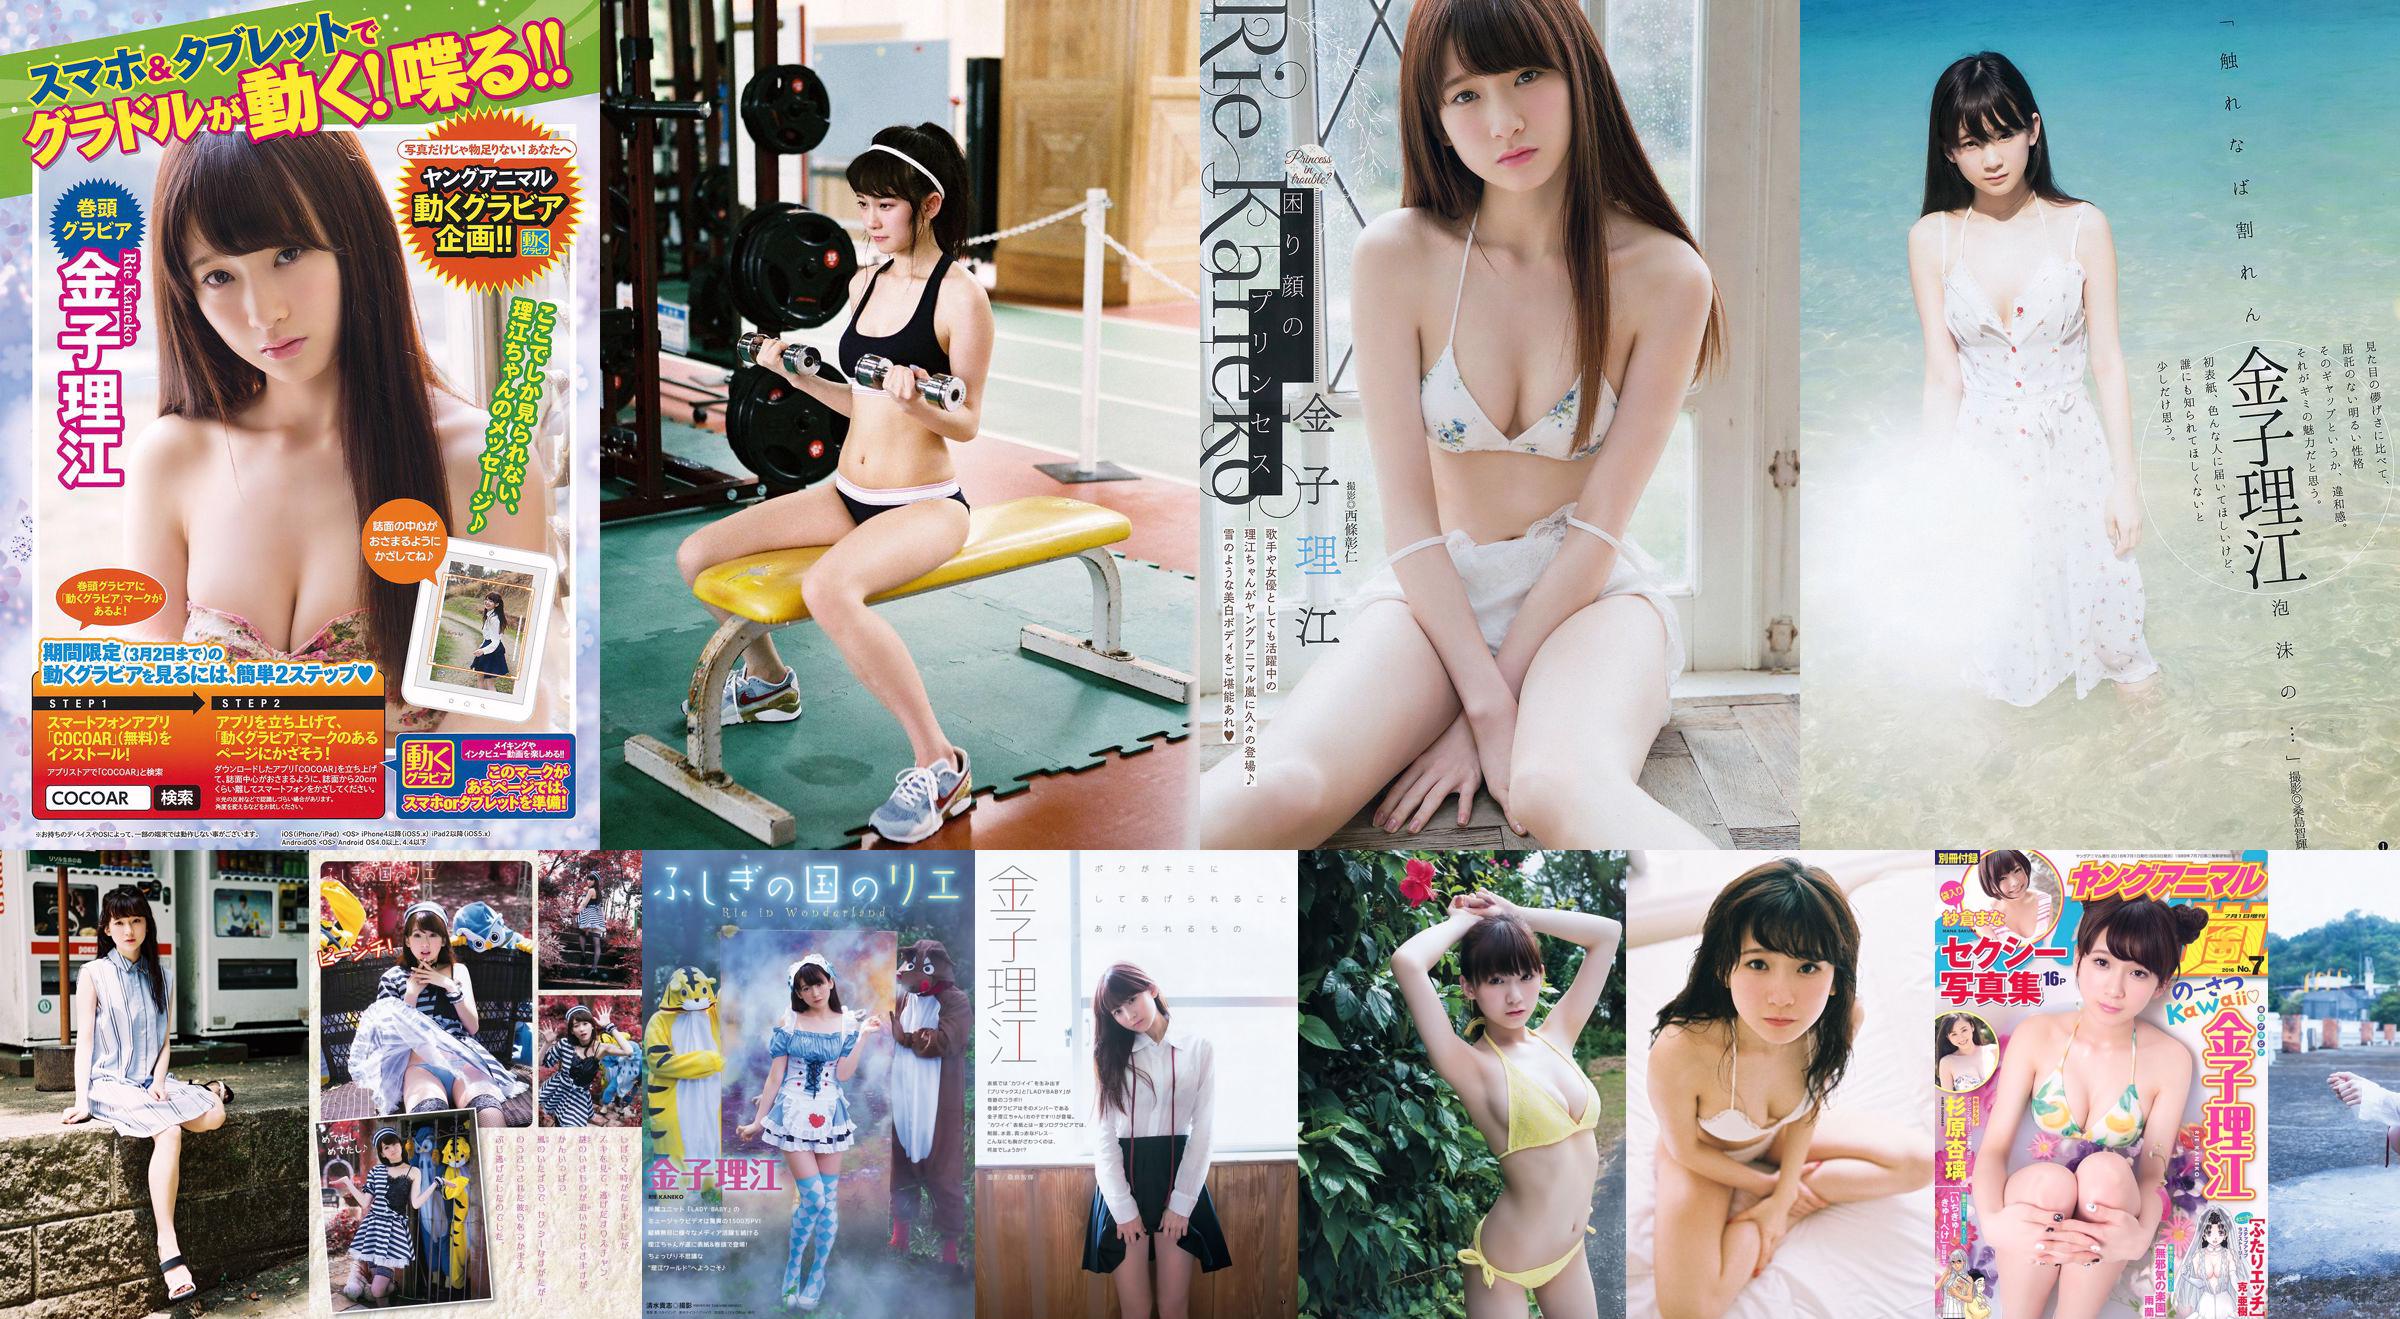 Rie Kaneko, Anri Sugihara, Sakura ま な [Young Animal Arashi Special Issue] No.07 2016 Photo Magazine No.1915de Página 3